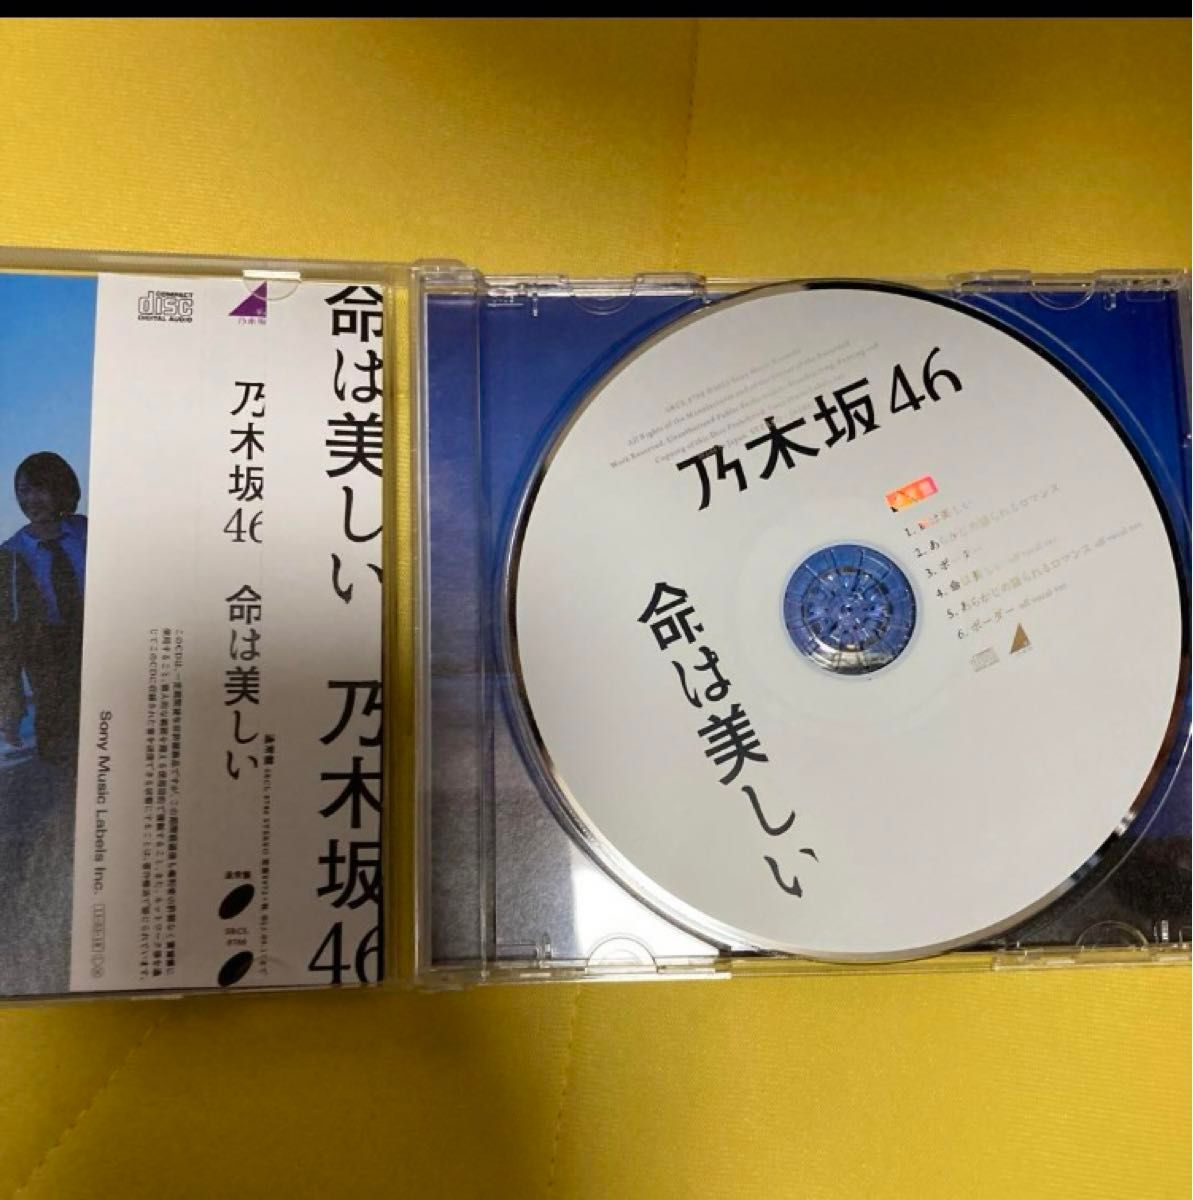 乃木坂46 命は美しい CD 通常盤